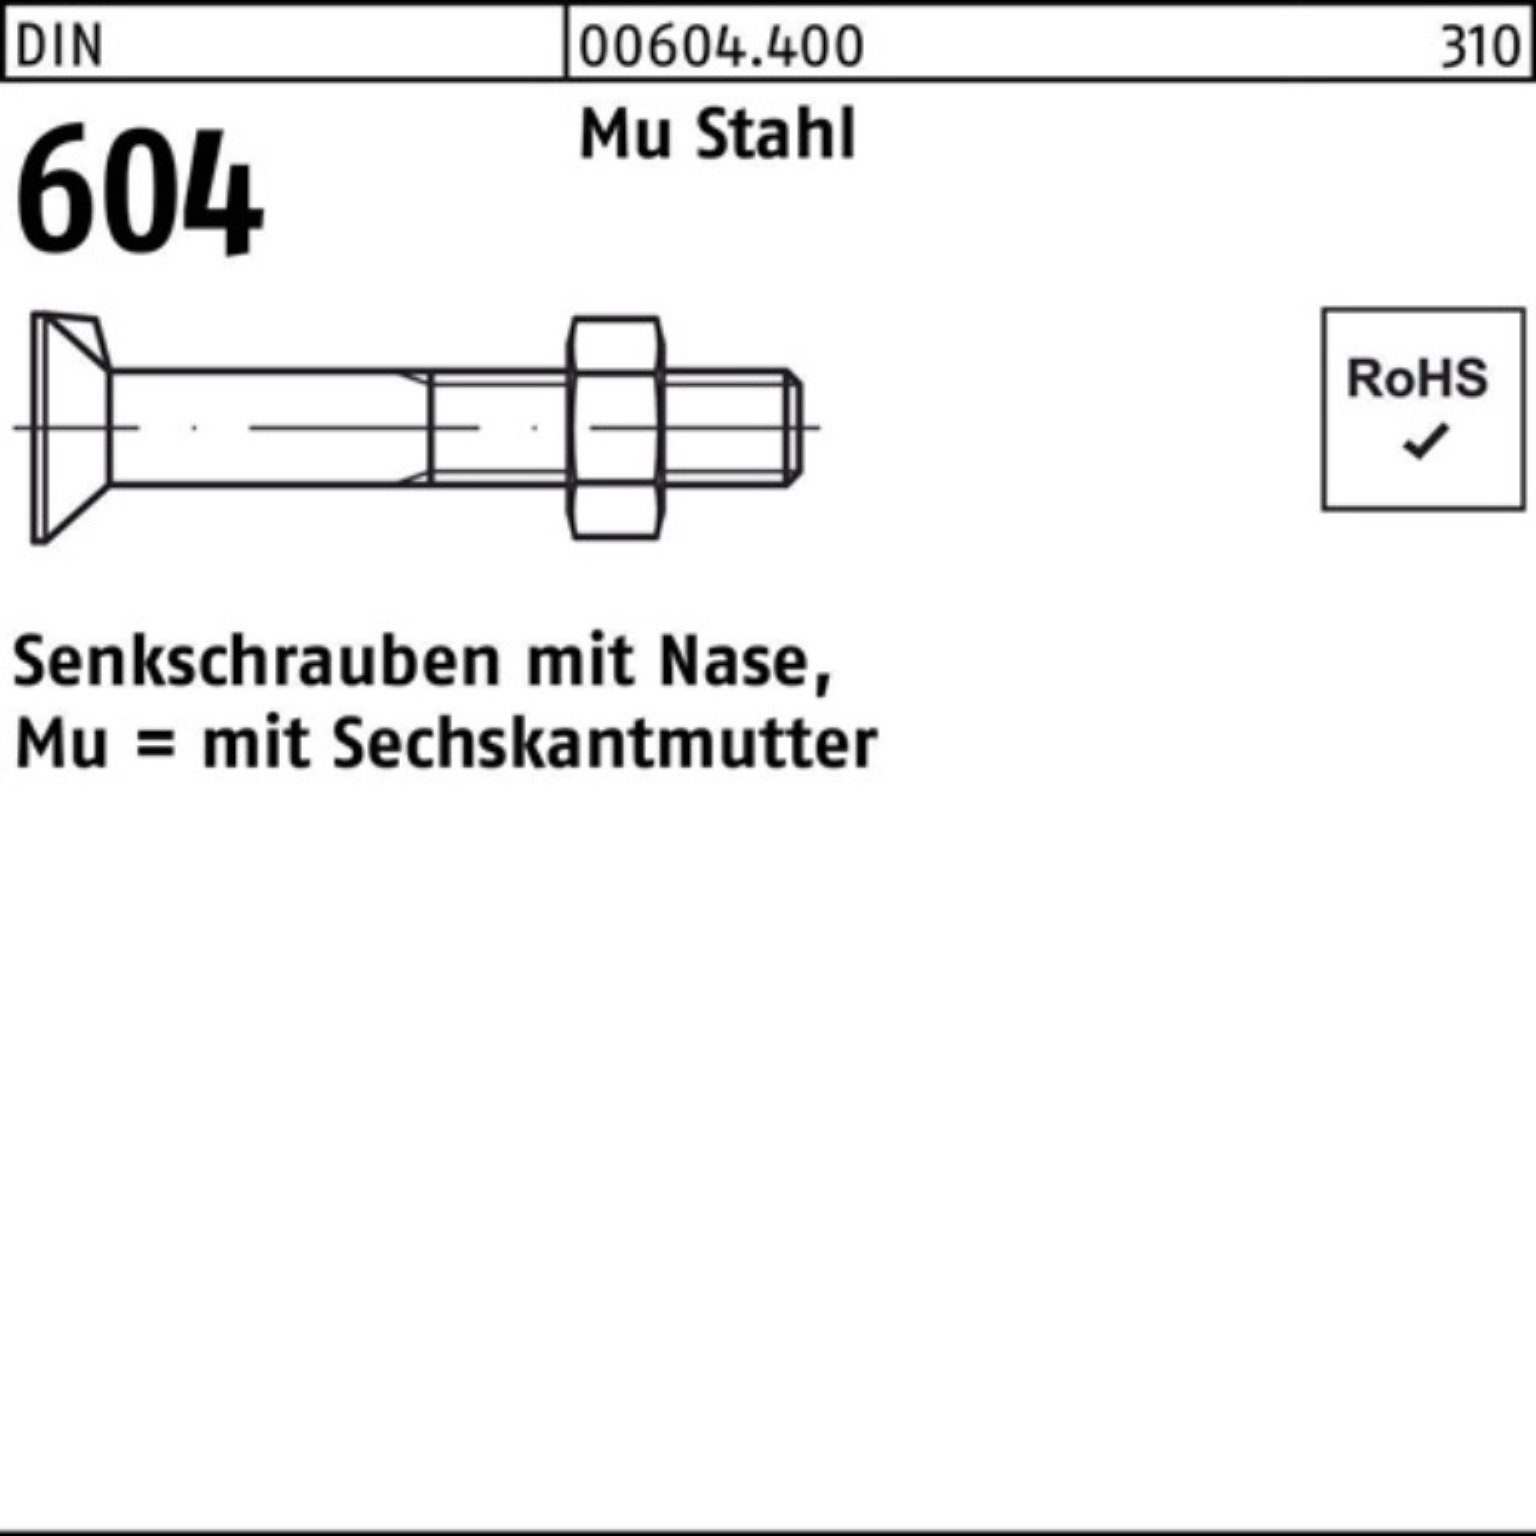 Reyher Senkschraube 100er Pack Senkschraube DIN 604 Nase/6-ktmutter M12x 100 Mu Stahl 4.6